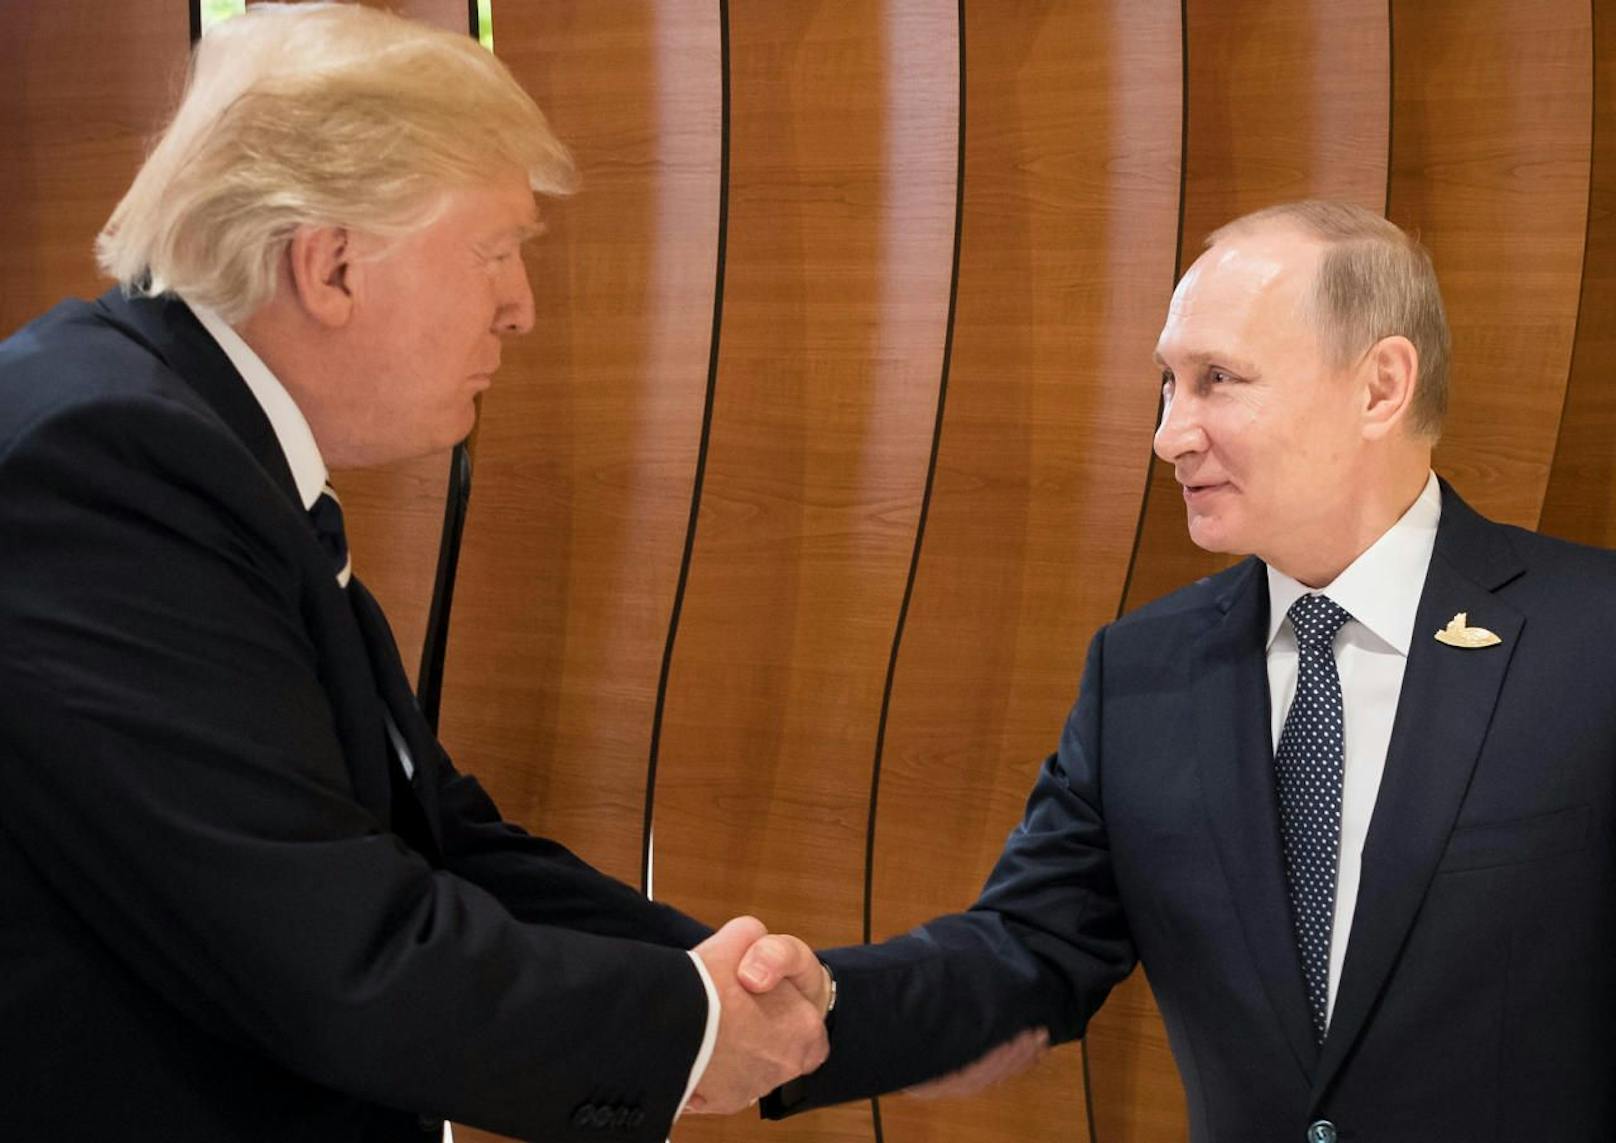 Der Handschlag der beiden Präsidenten.